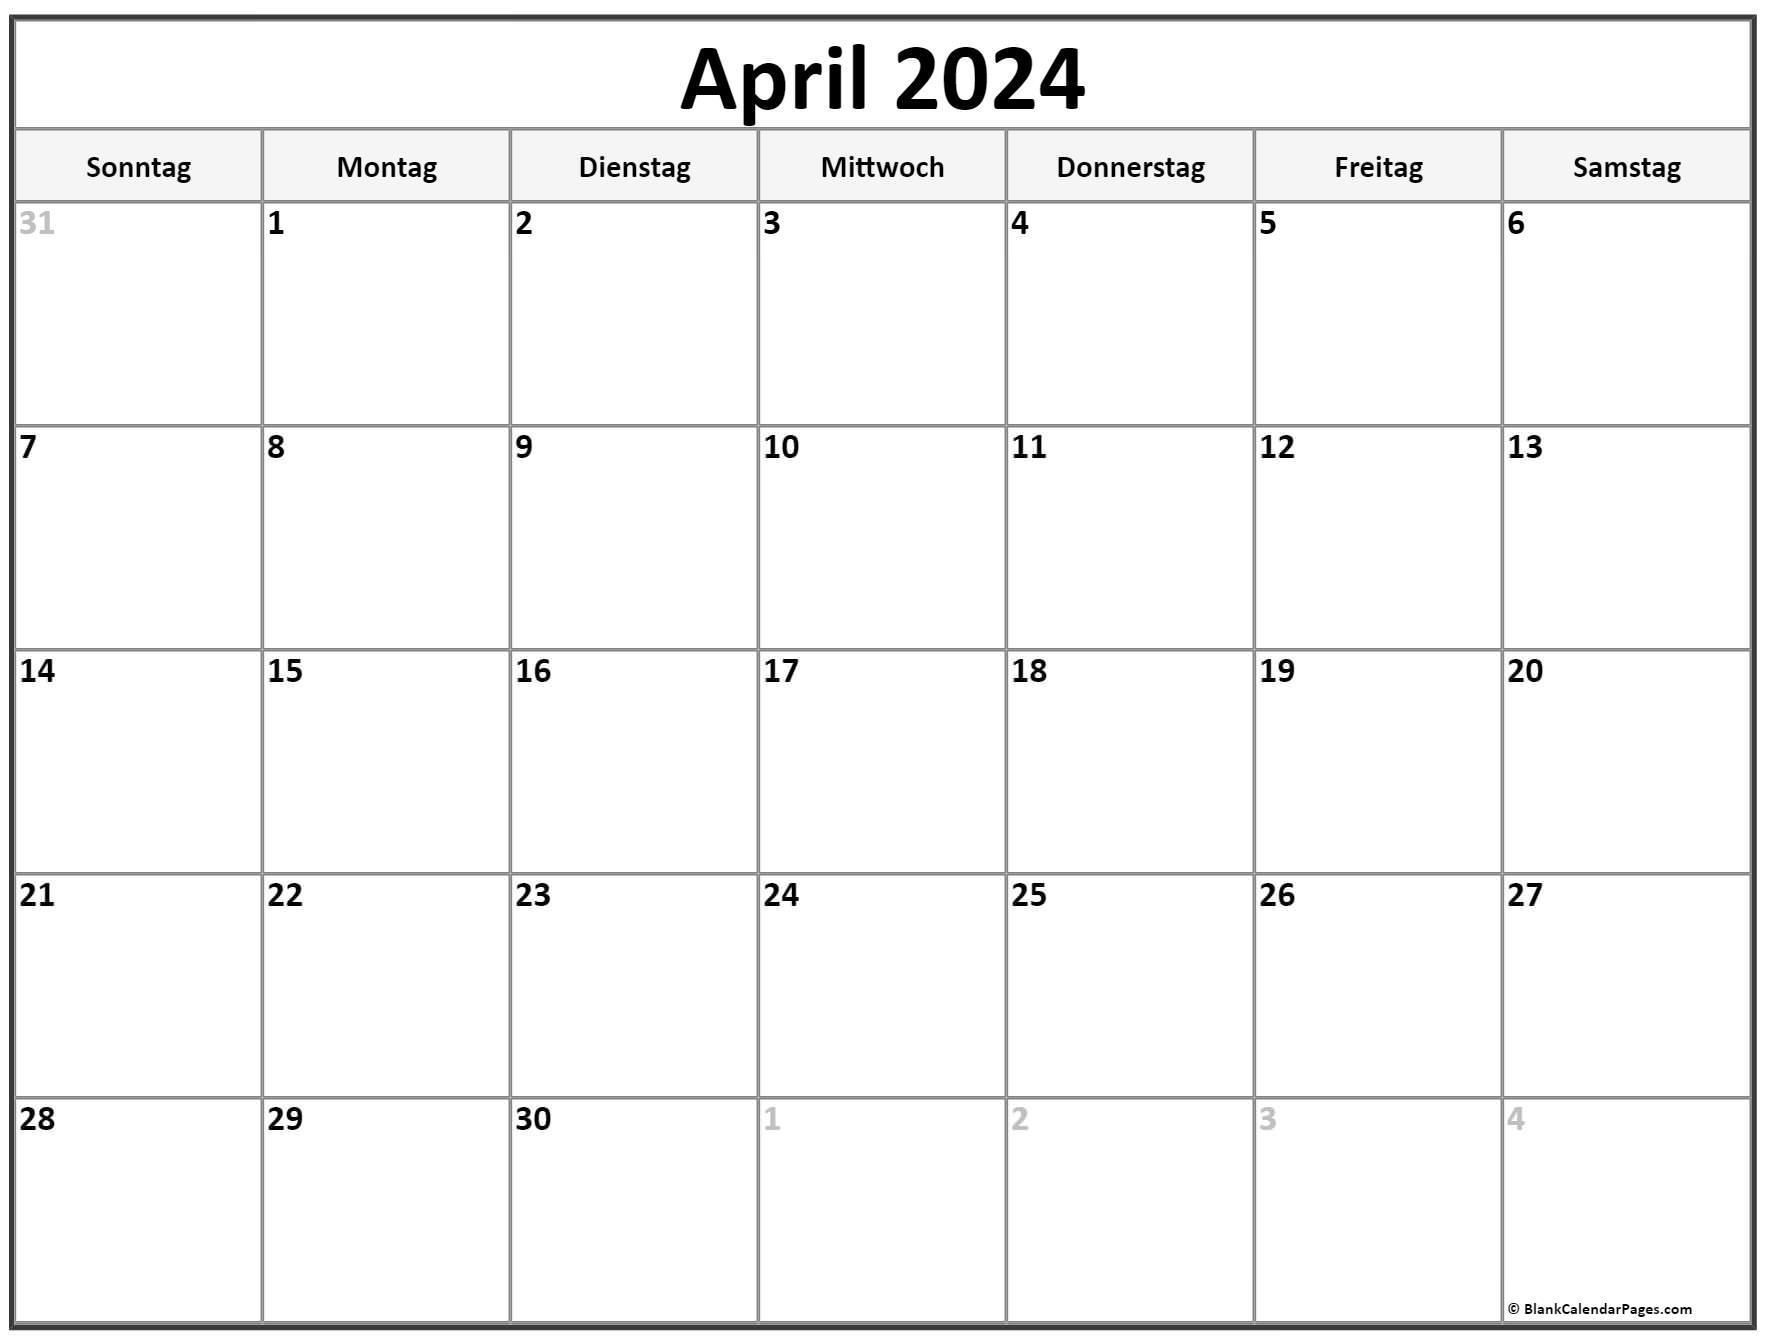 April 2024 kalender auf Deutsch kalender 2024